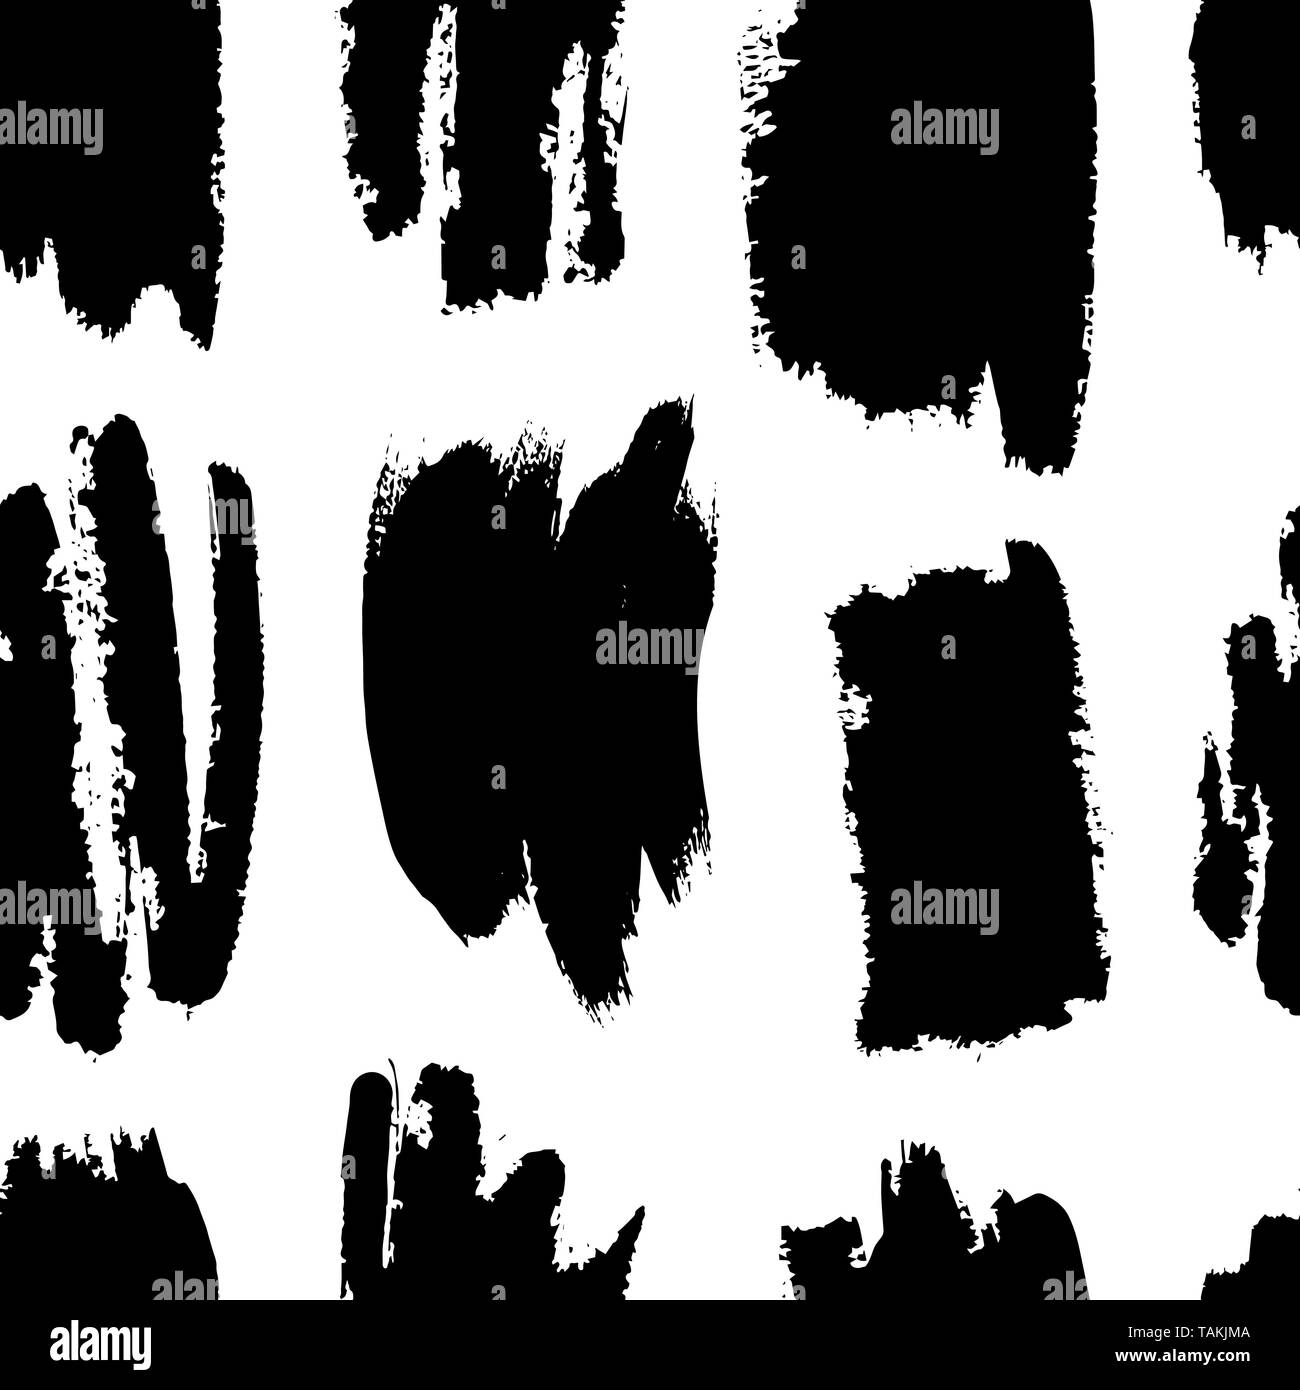 Von Hand bemalt Pinselstriche in Schwarz und Weiß. Monochrome nahtlose Vektor abstraktes Muster, Hintergrund der Pinselstriche. Grunge, distressed Textur fo Stock Vektor